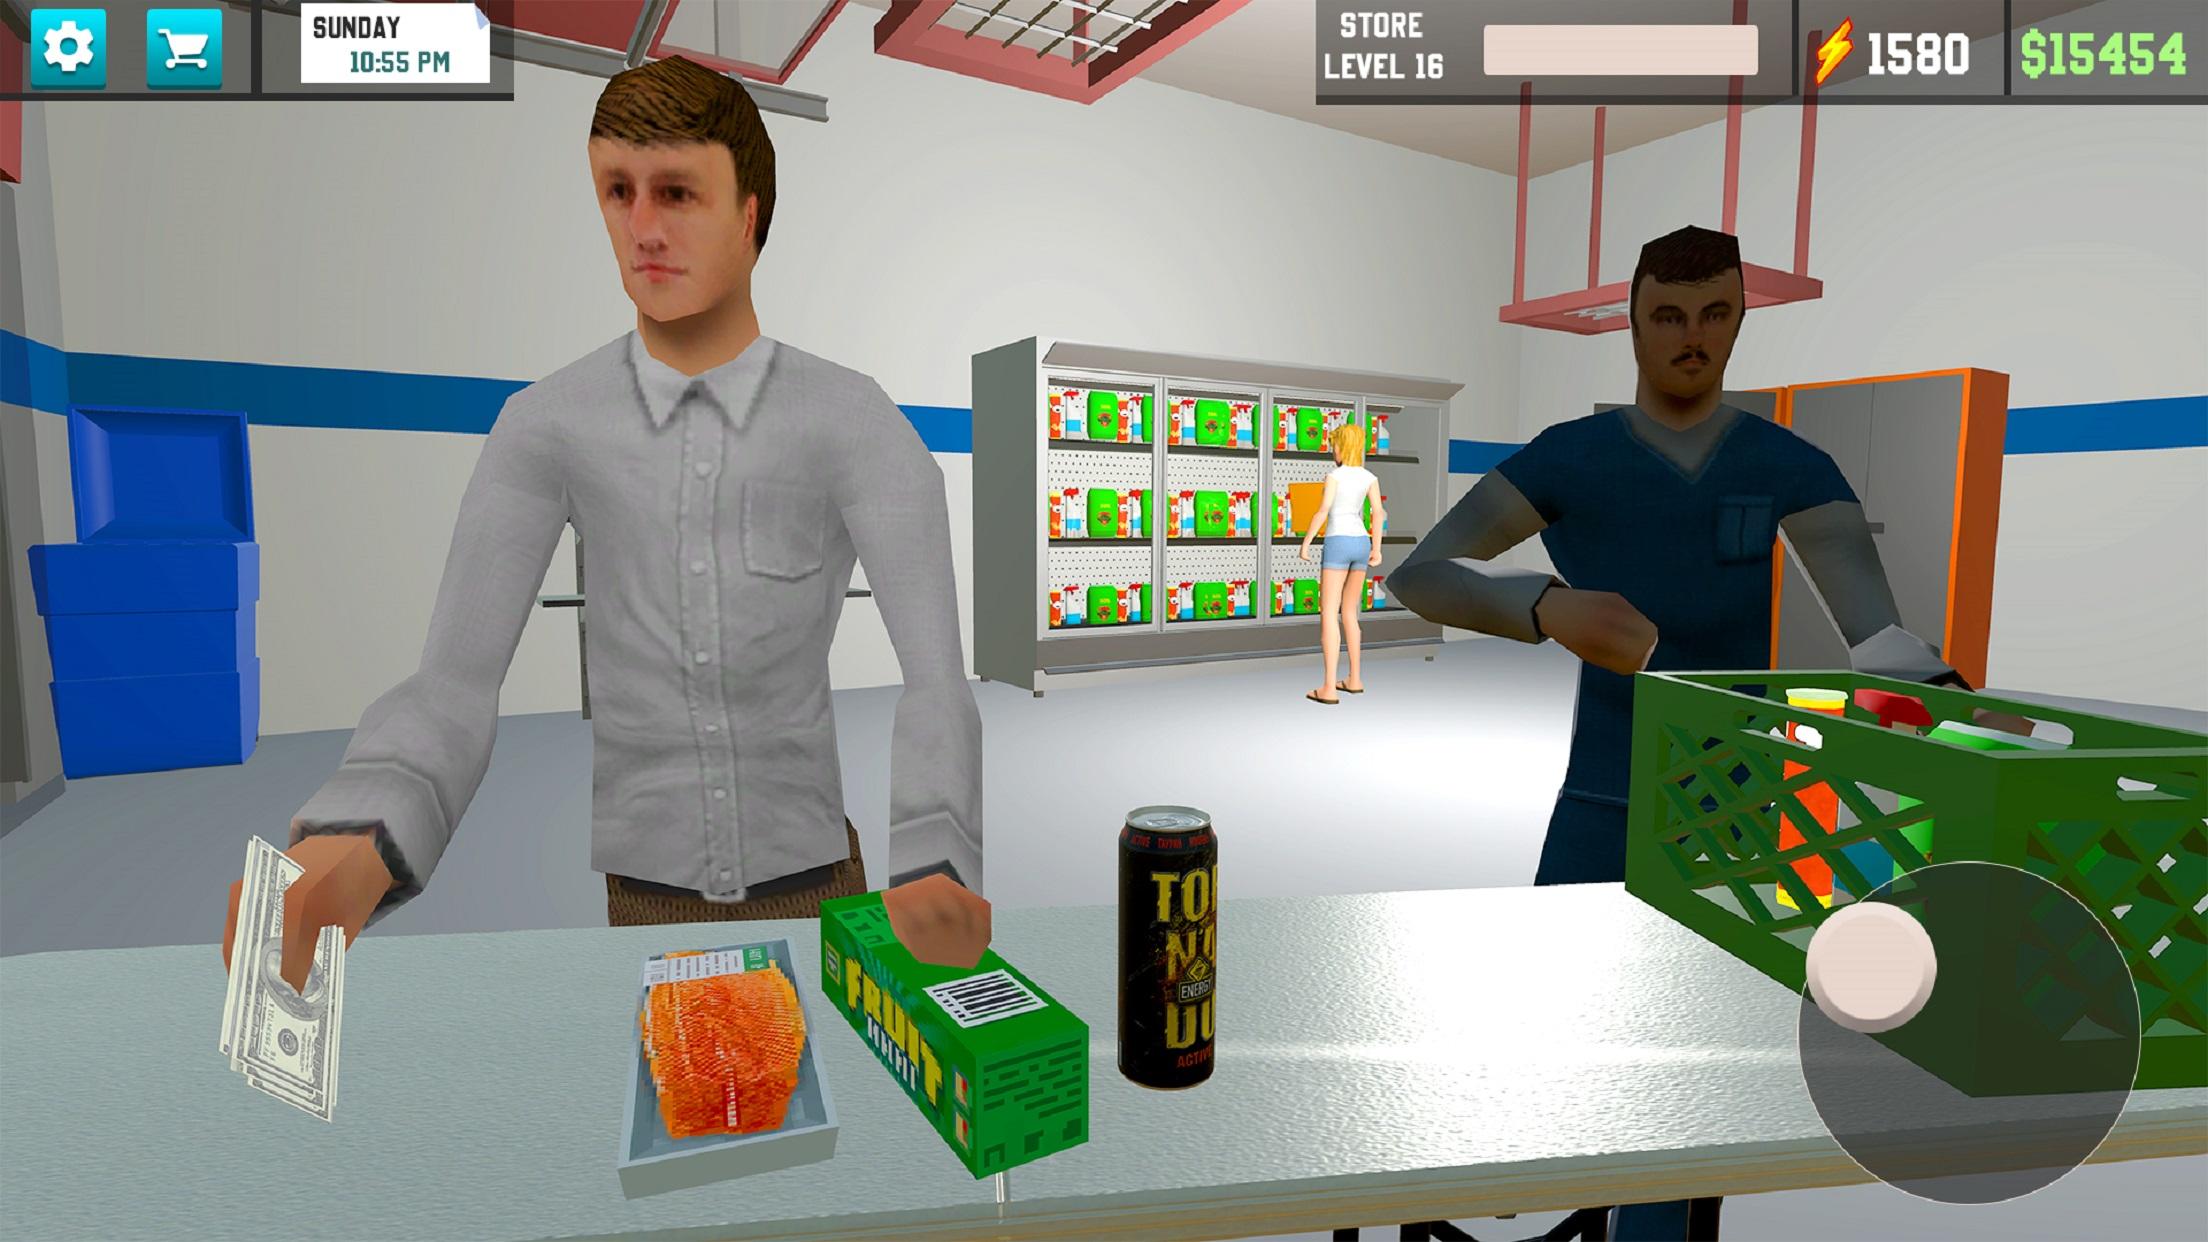 Screenshot 1 of Supermarket Store Simulator 3D 0.4